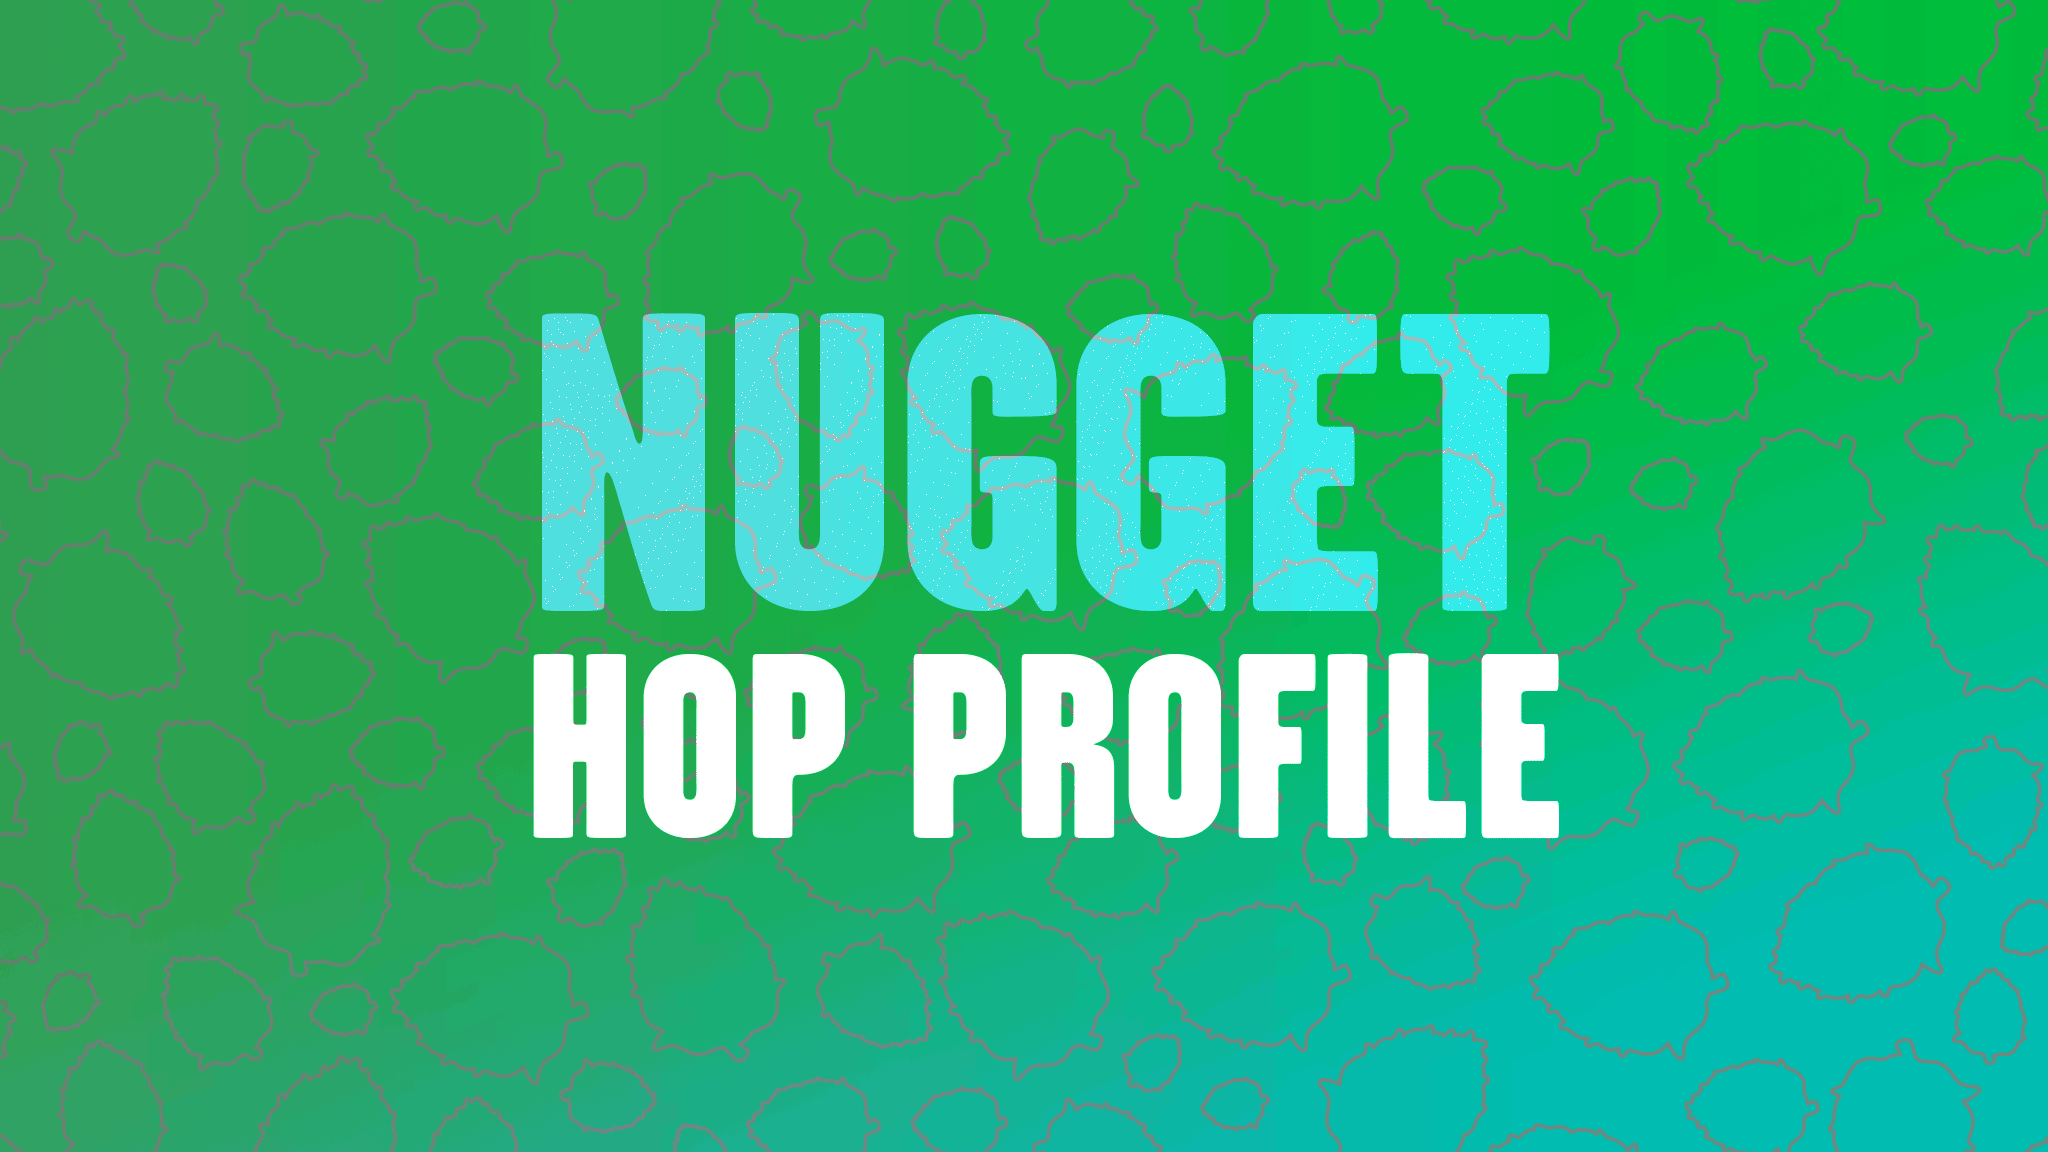 Hop Profile: Nugget